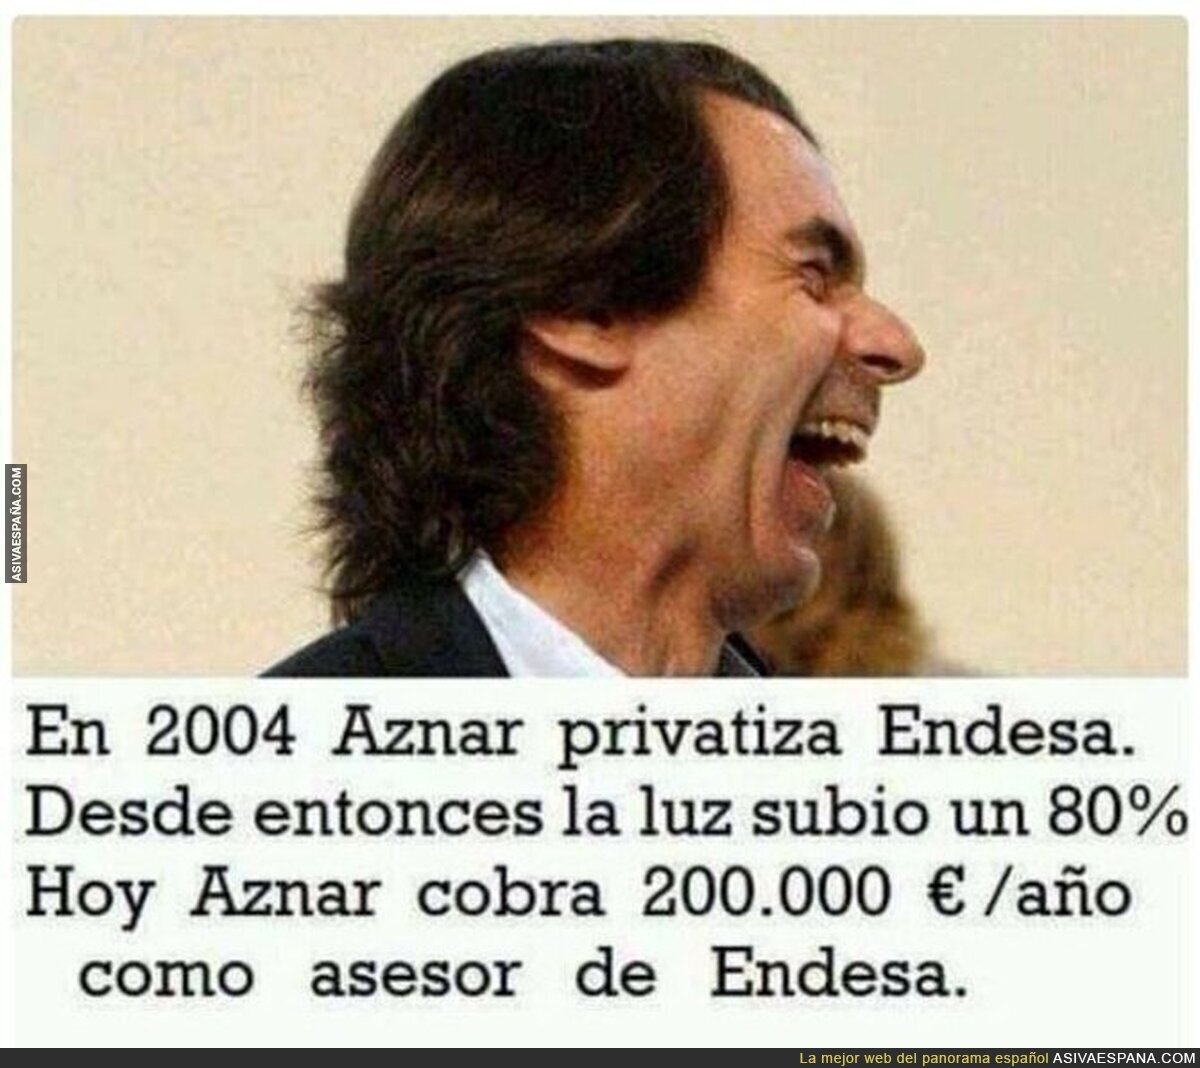 Escandaloso cuanto menos lo de Aznar